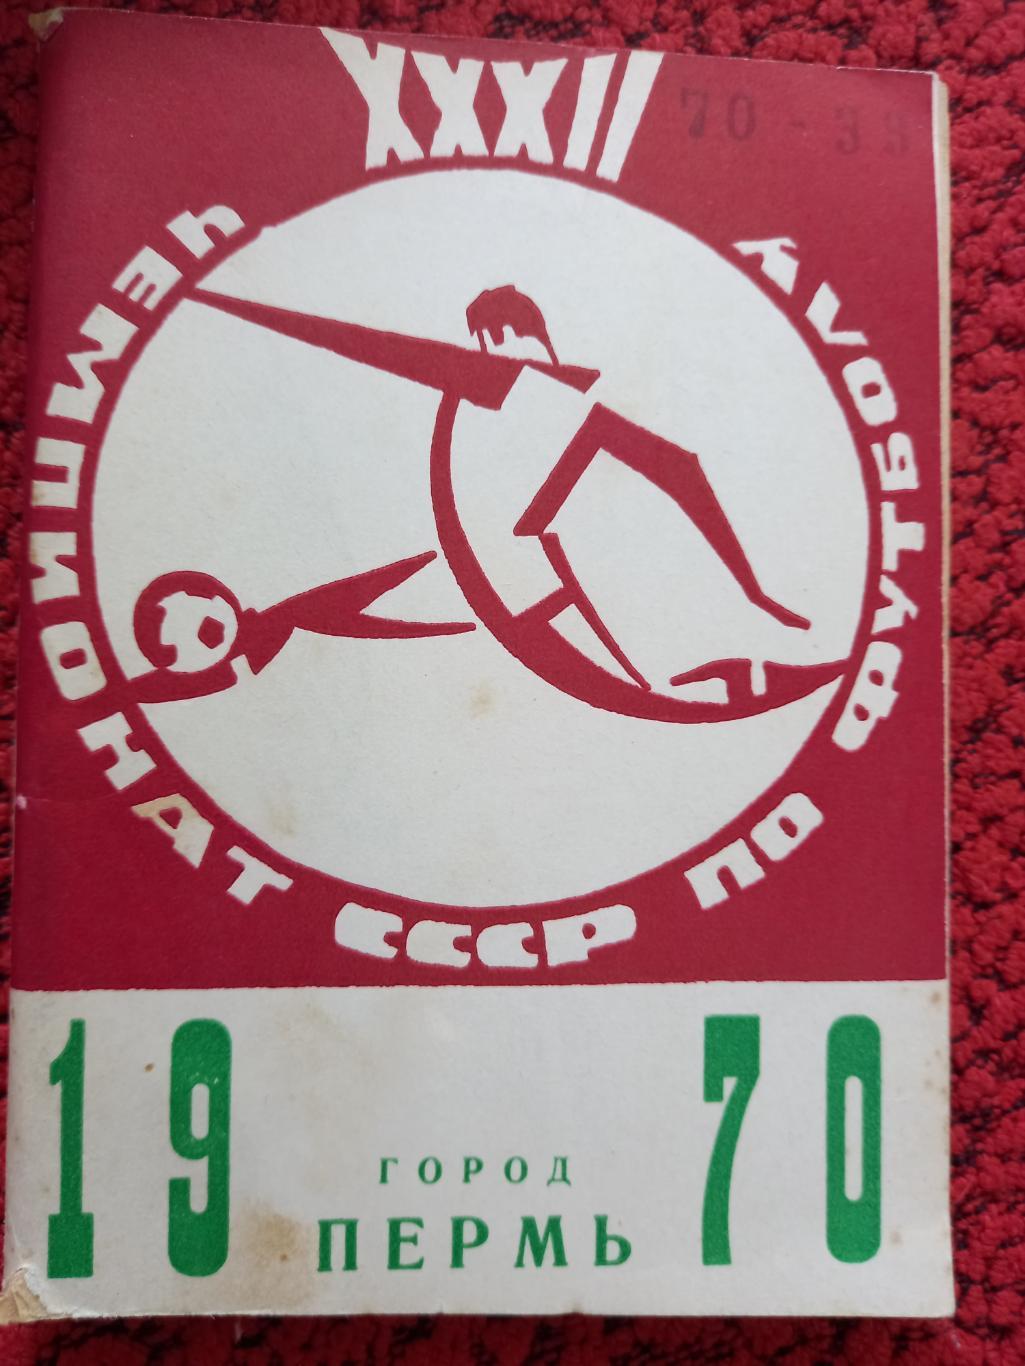 Календарь - справочник Пермь 1970г.г.